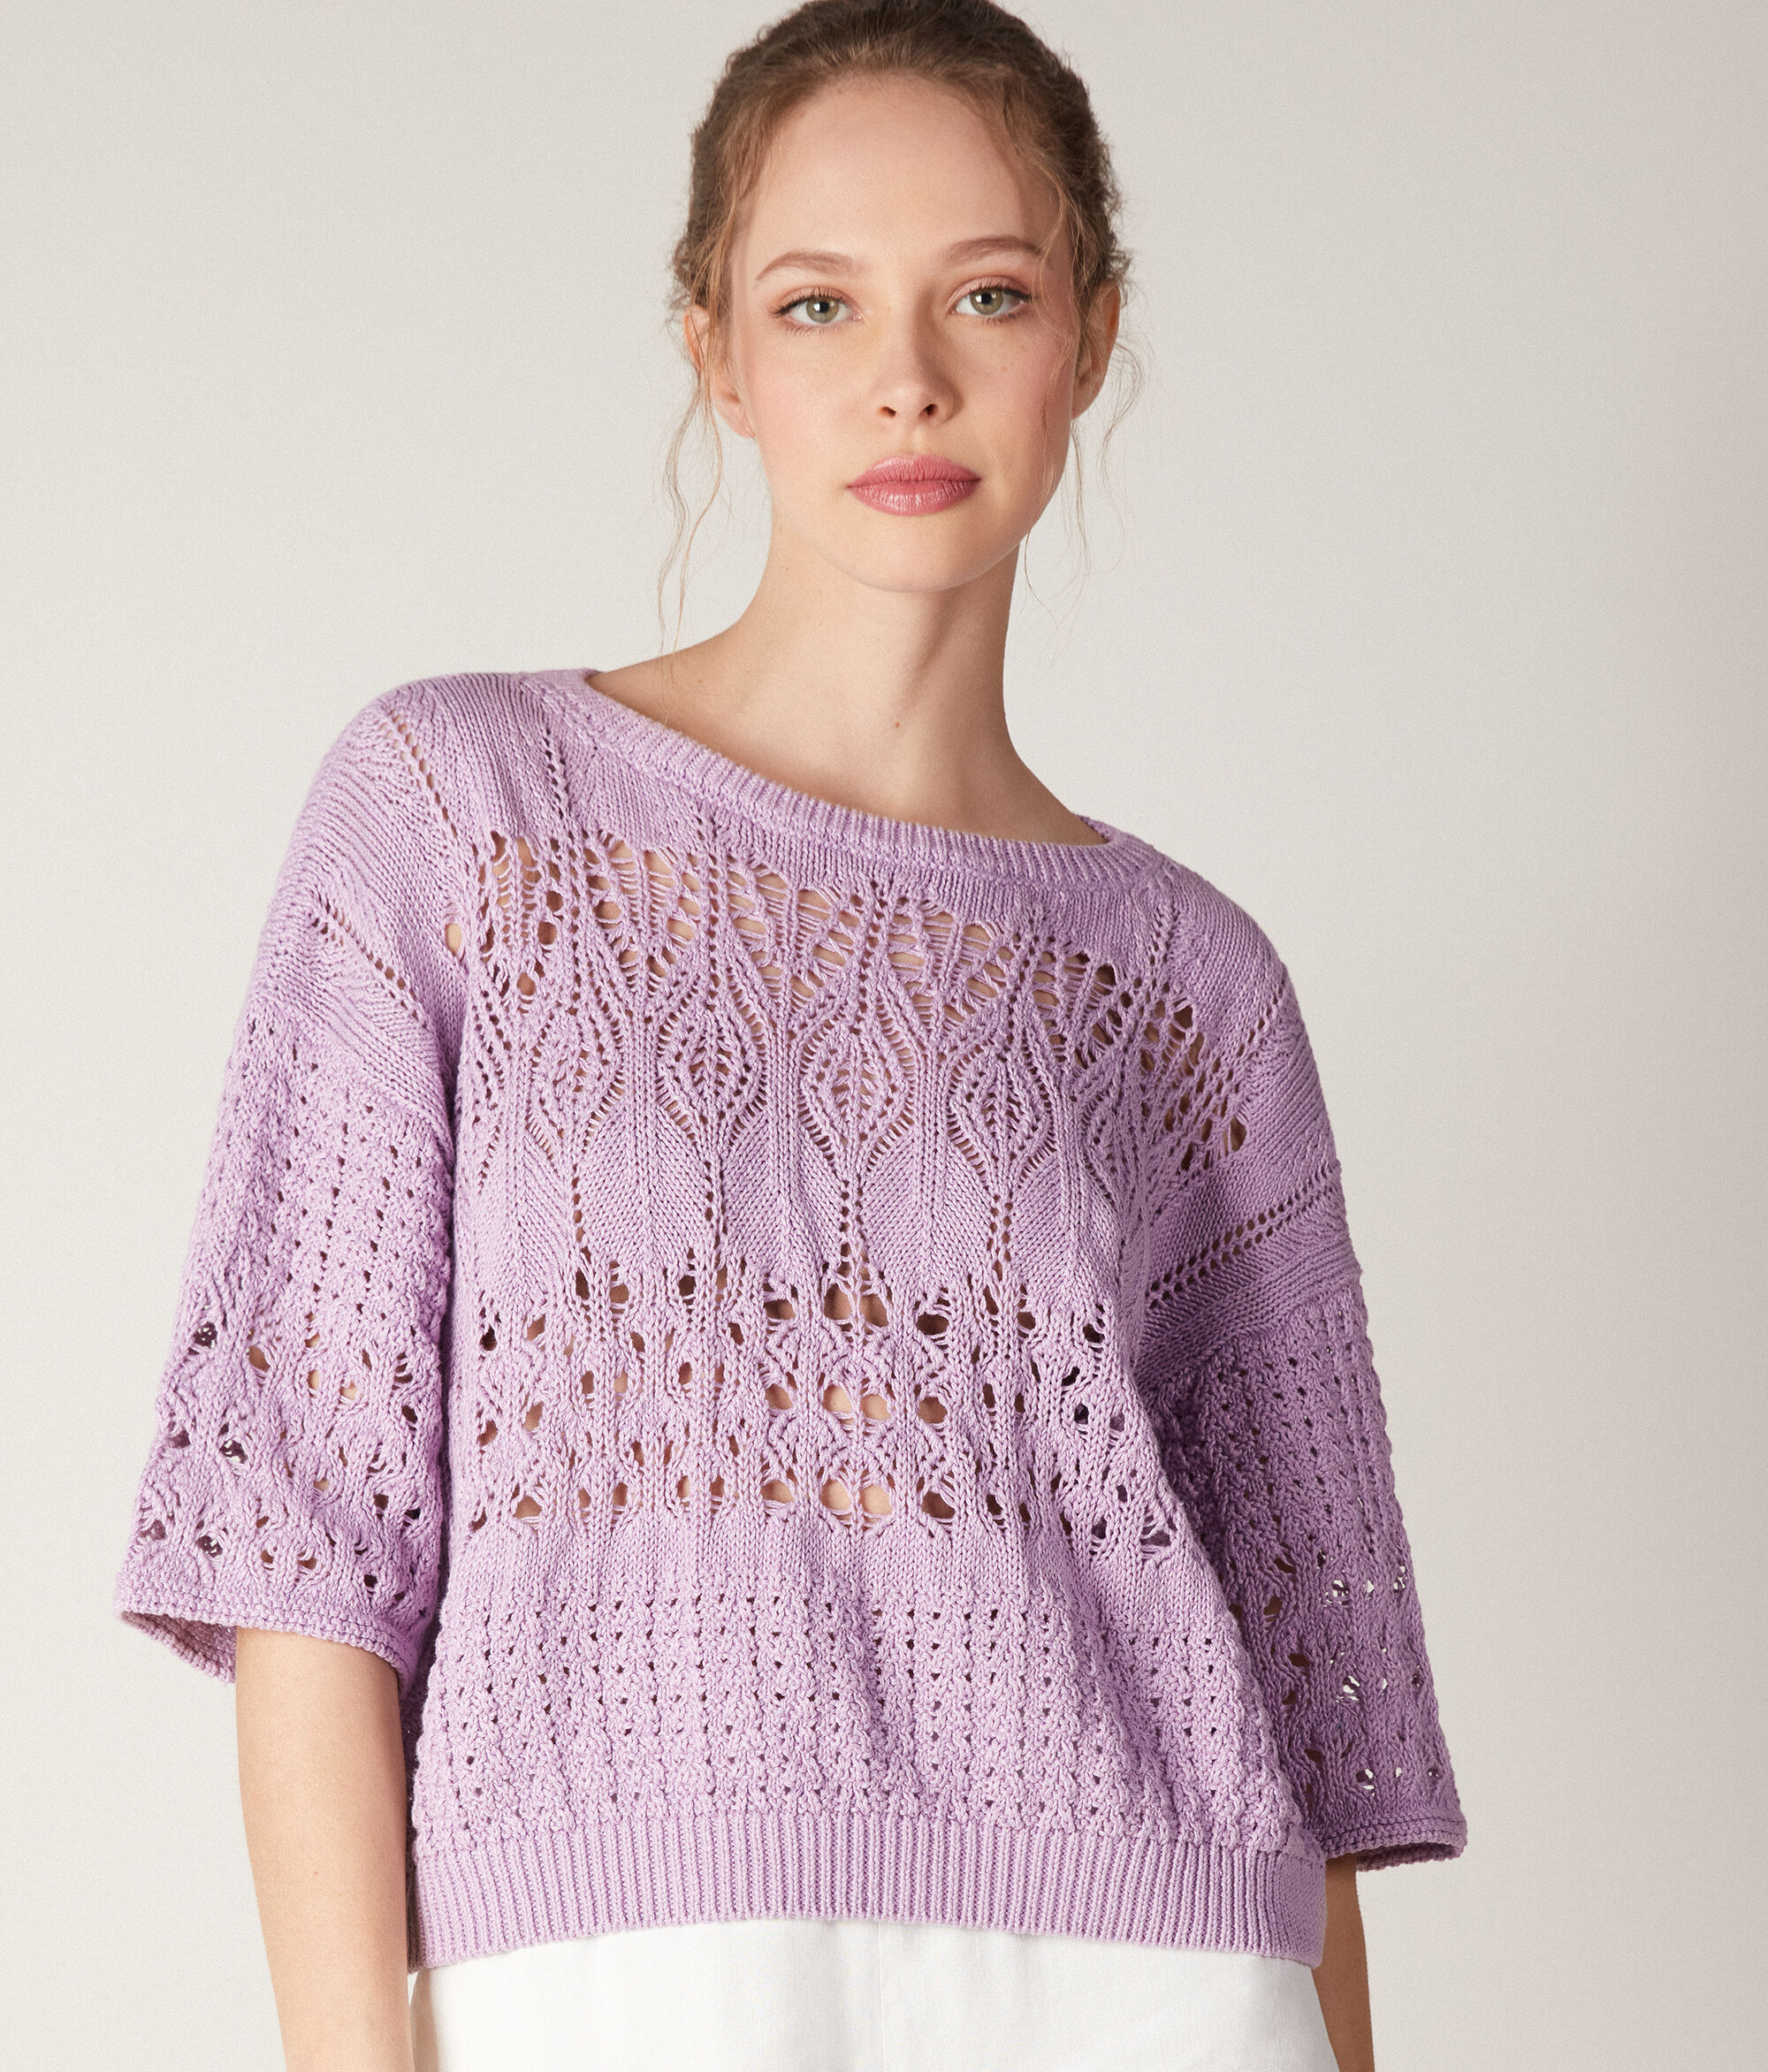 Crochet Boatneck Sweater